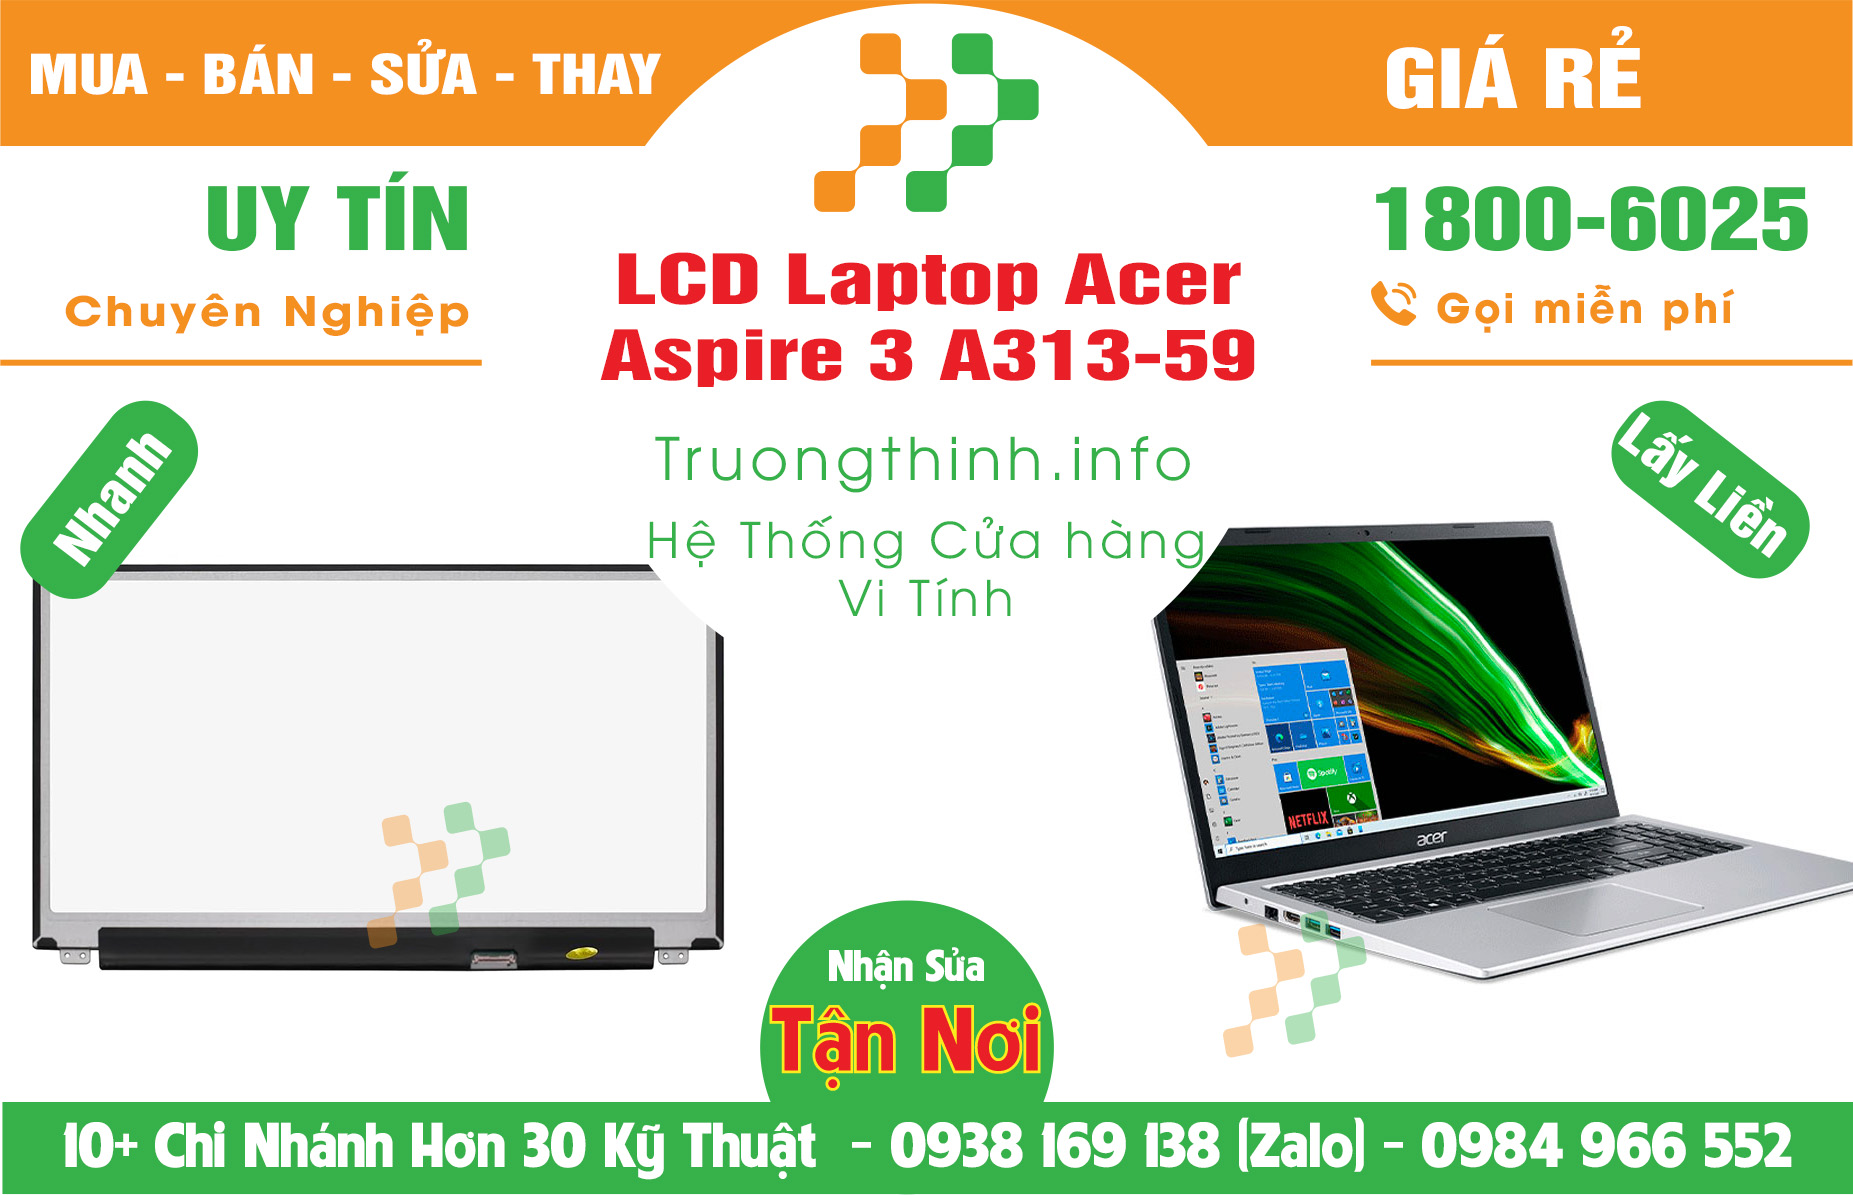 Mua Bán Màn Hình Laptop Acer Aspire 3 A313-59 Giá Rẻ | Máy Tính Trường Thịnh Giá Rẻ